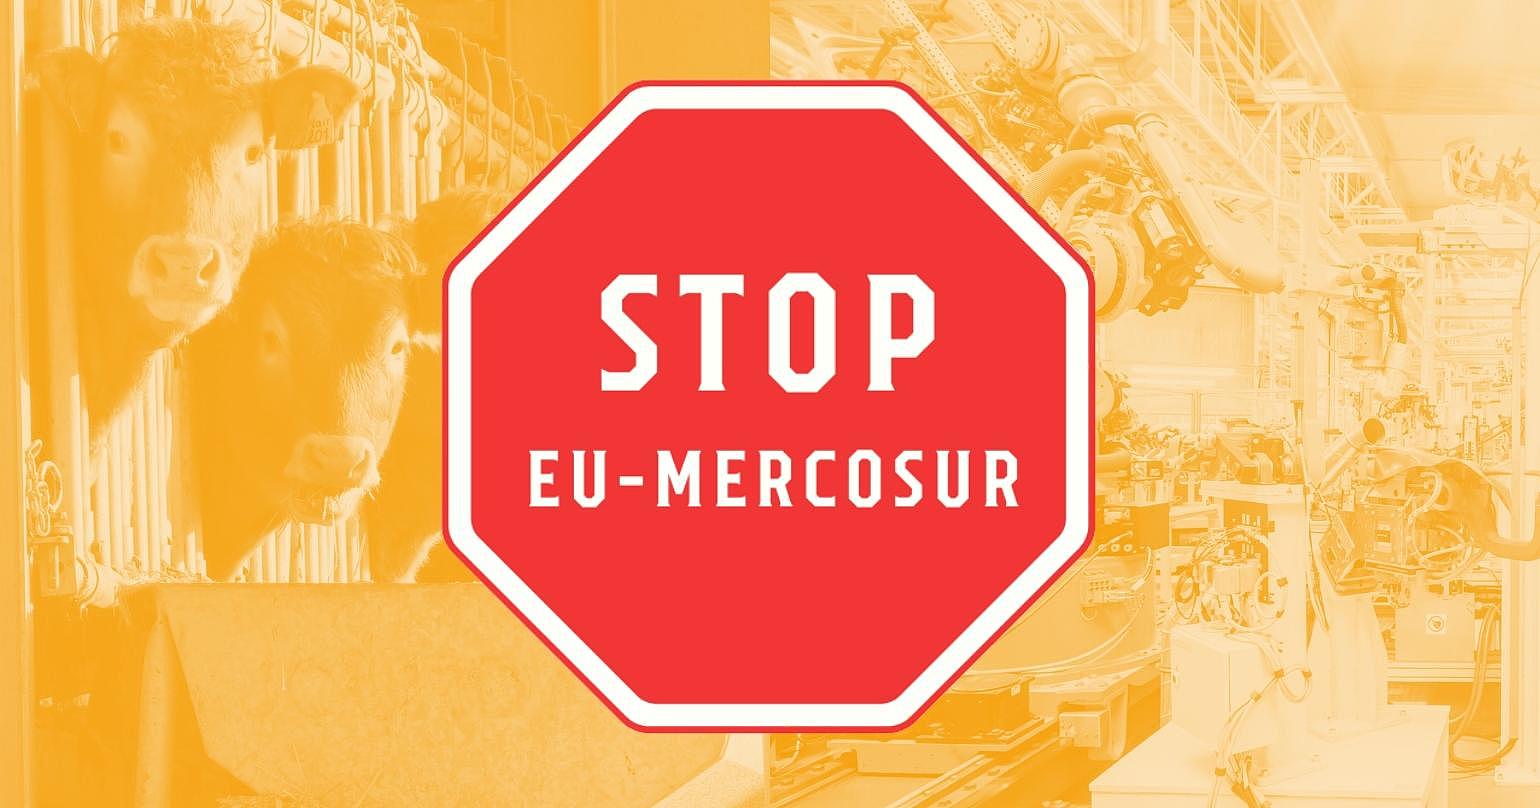 UE-Mercosur: Negociaciones secretas para cerrar trato a toda costa